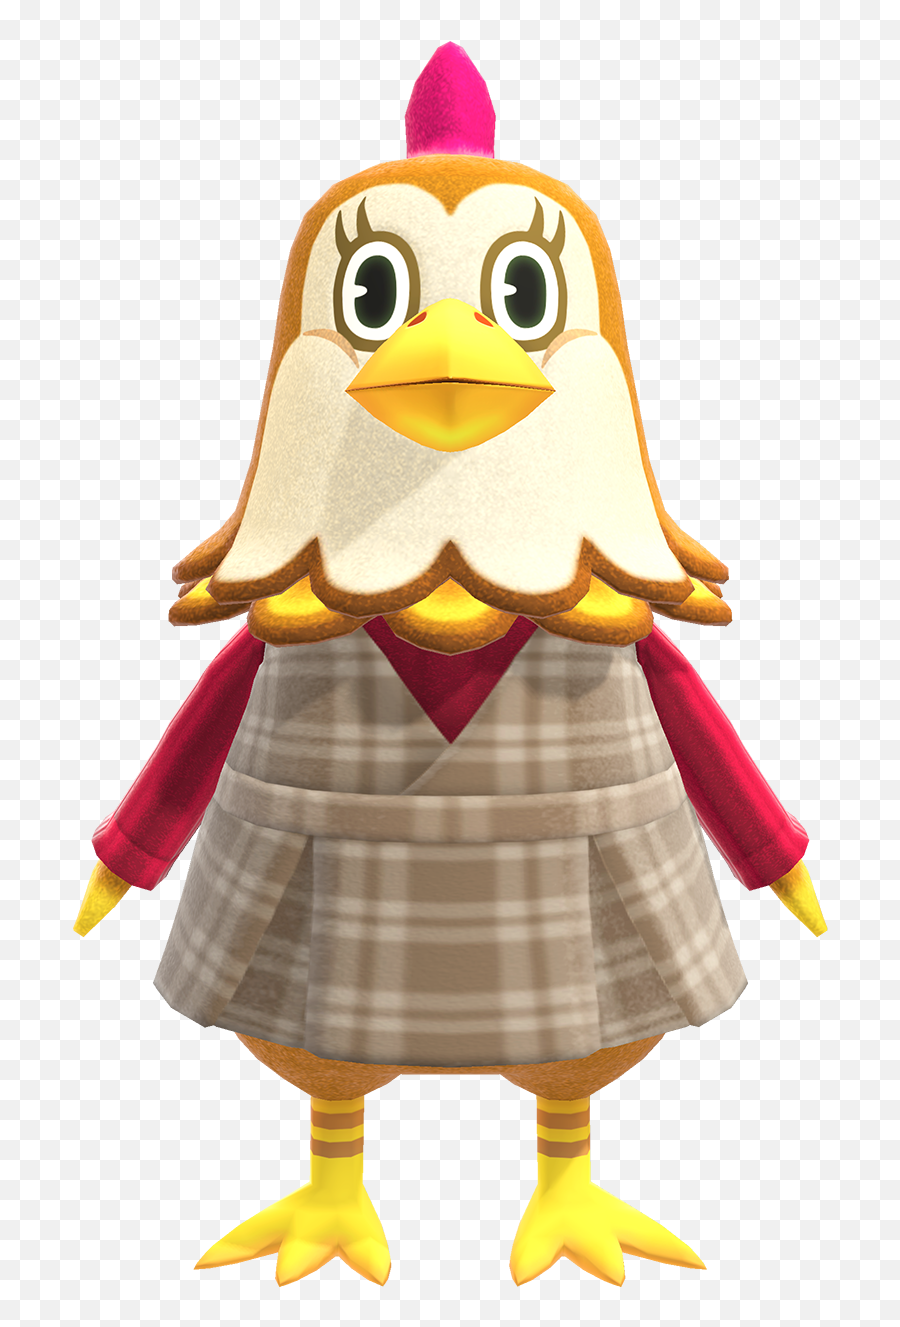 Ava - Ava From Animal Crossing Emoji,Emotion In Chickens